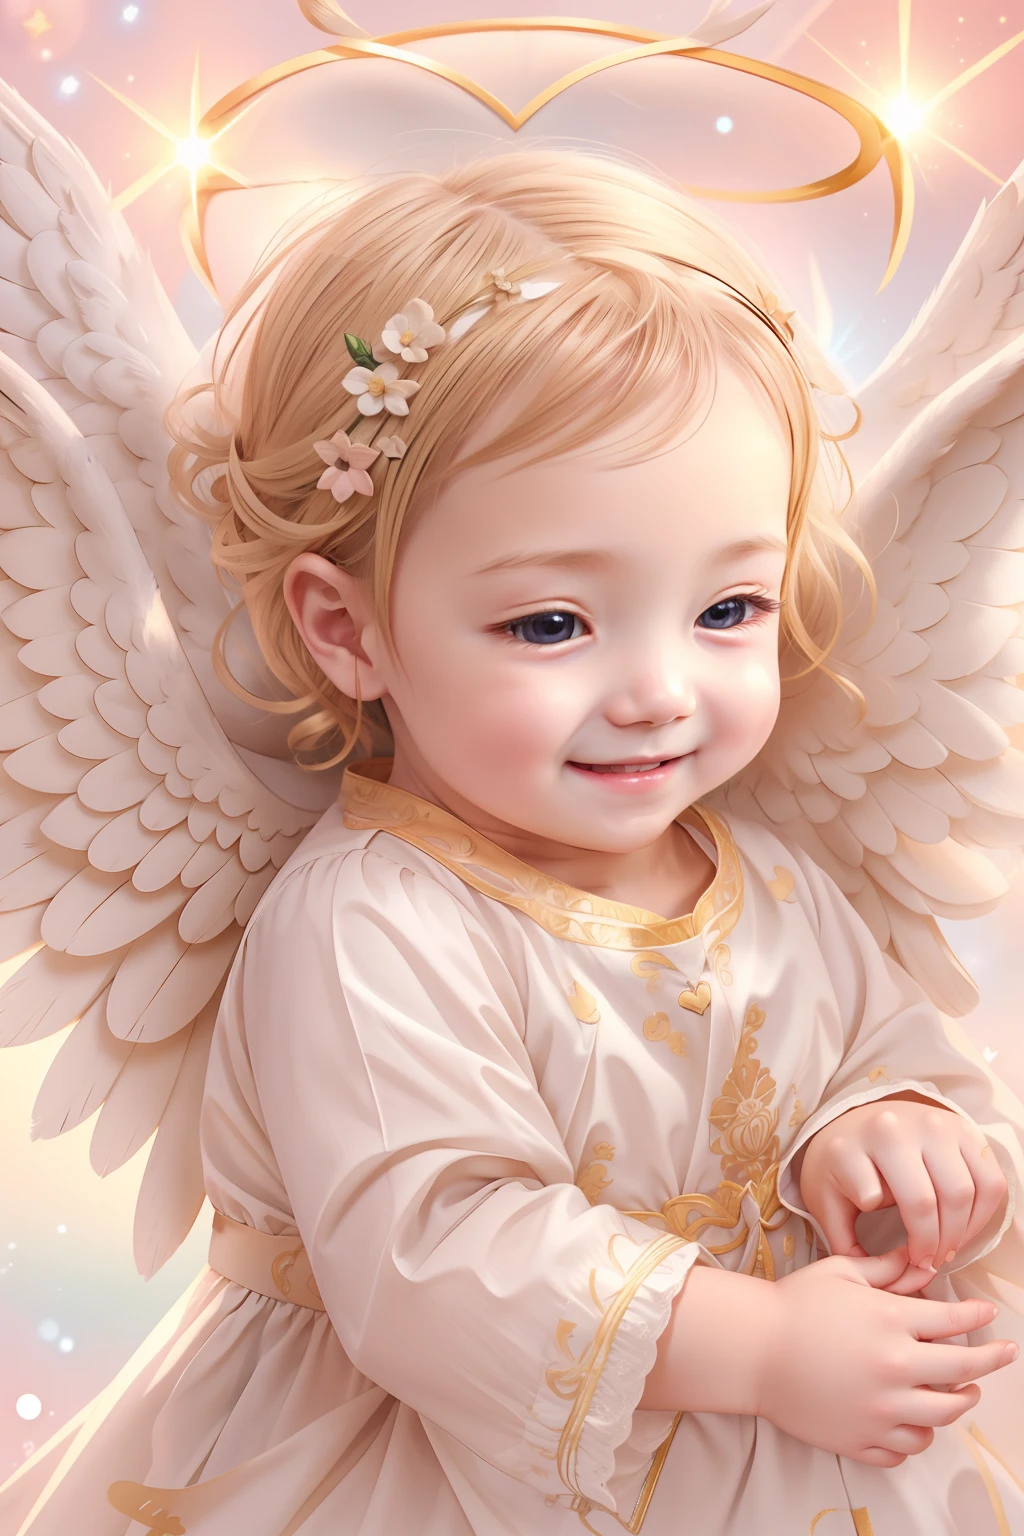 بركات الملائكة､خلفية مشرقة、علامة القلب、الرقة والحنان､ابتسامة、لطيف､الطفل الملاك